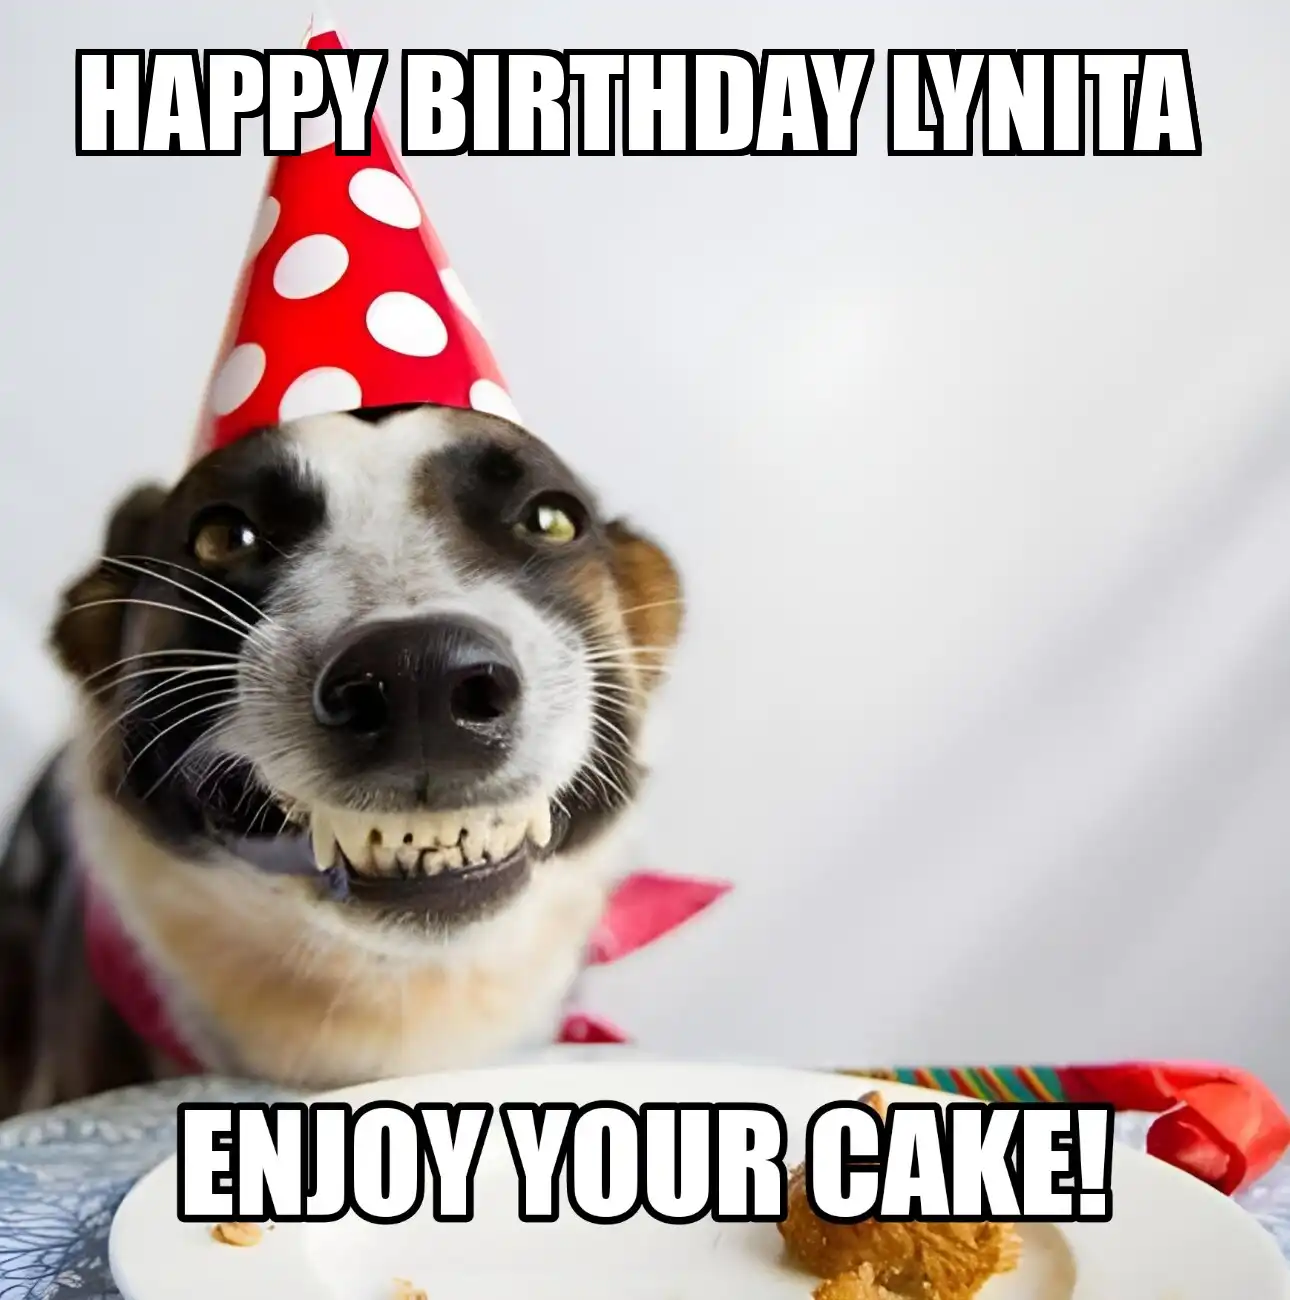 Happy Birthday Lynita Enjoy Your Cake Dog Meme